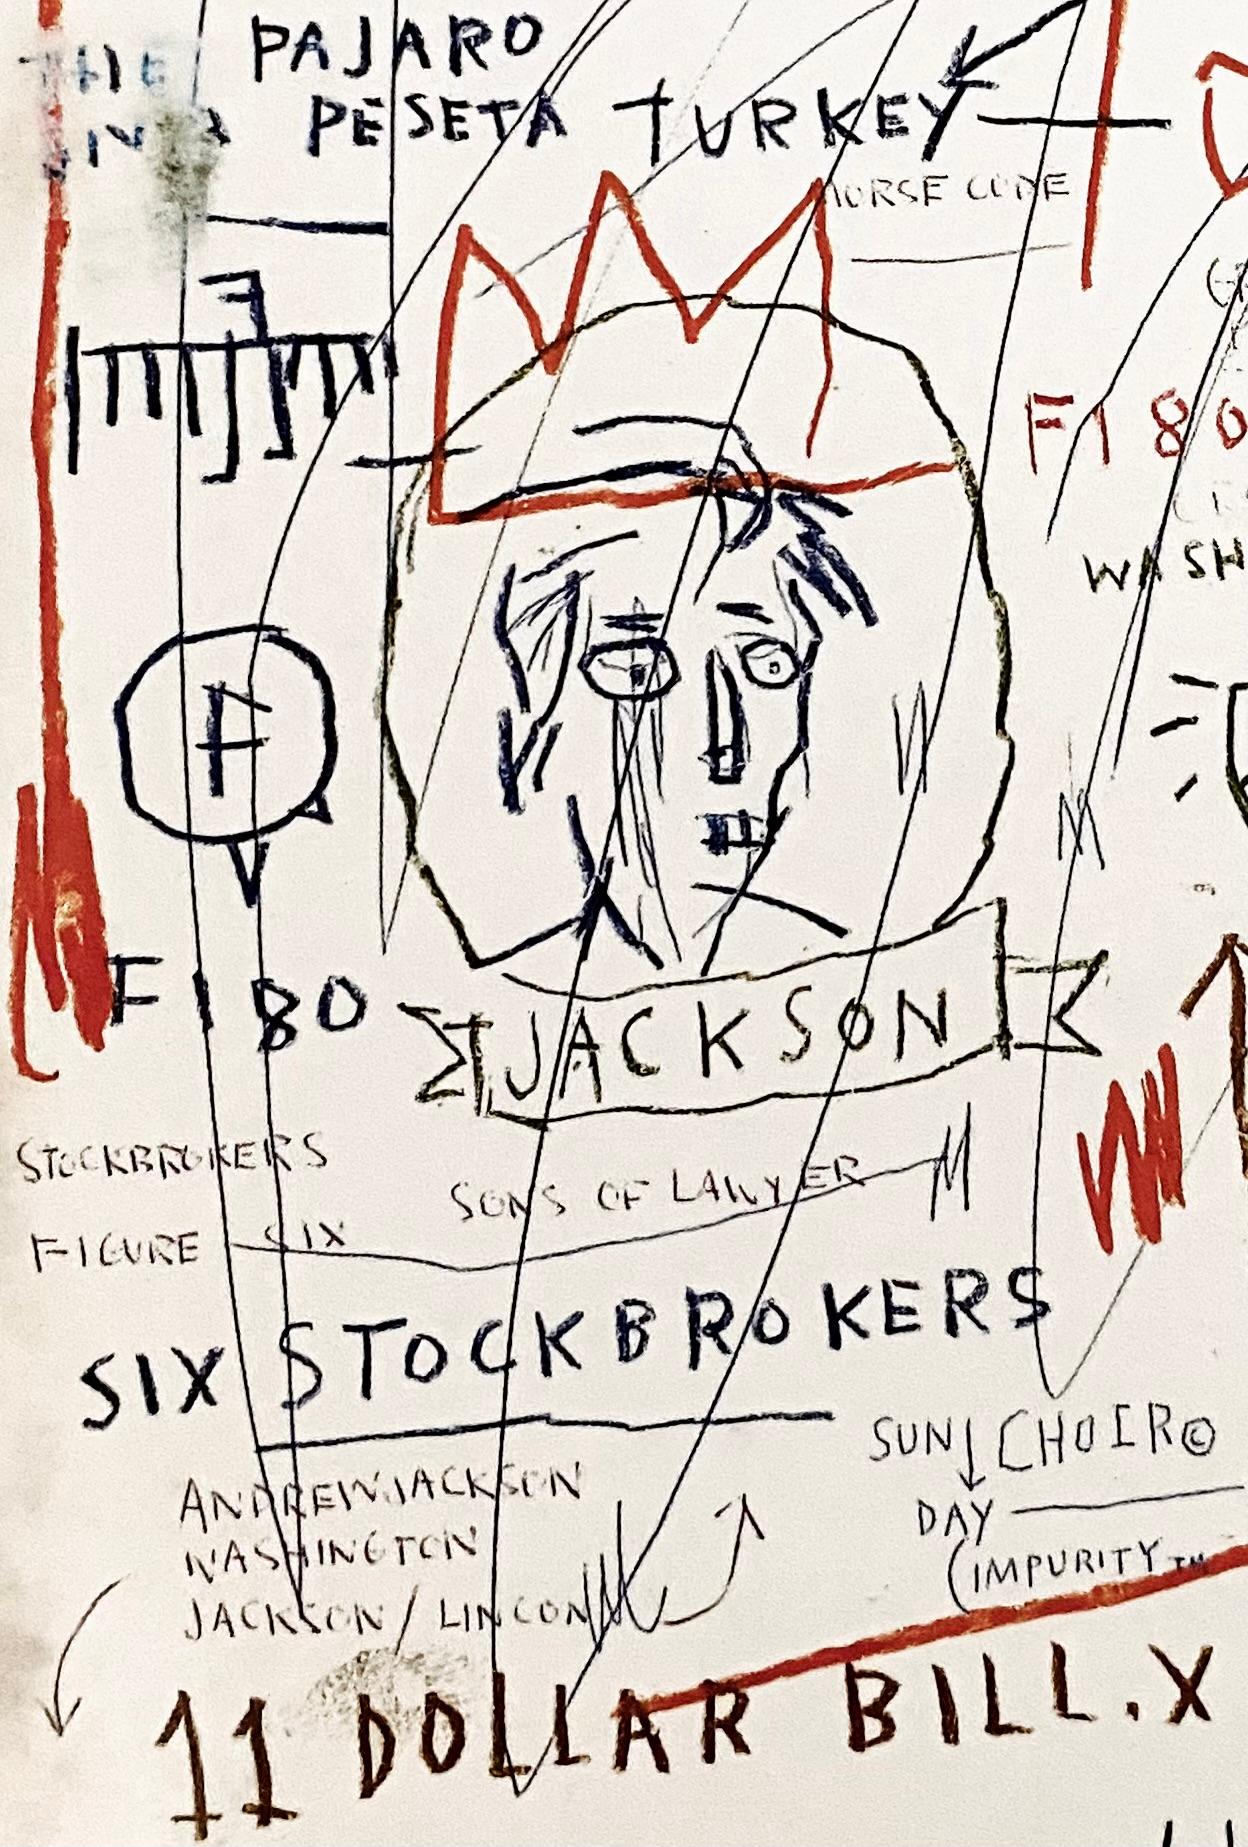 Jean-Michel Basquiat Die Pariser Rundschau:
1989 Das Buch The Paris Review, mit dem Titelbild von Jean-Michel Basquiat. Die Abbildung zeigt eine Reproduktion von Basquiats (unbetiteltem) Jackson von 1982.

Offsetlithografie auf doppelseitigem